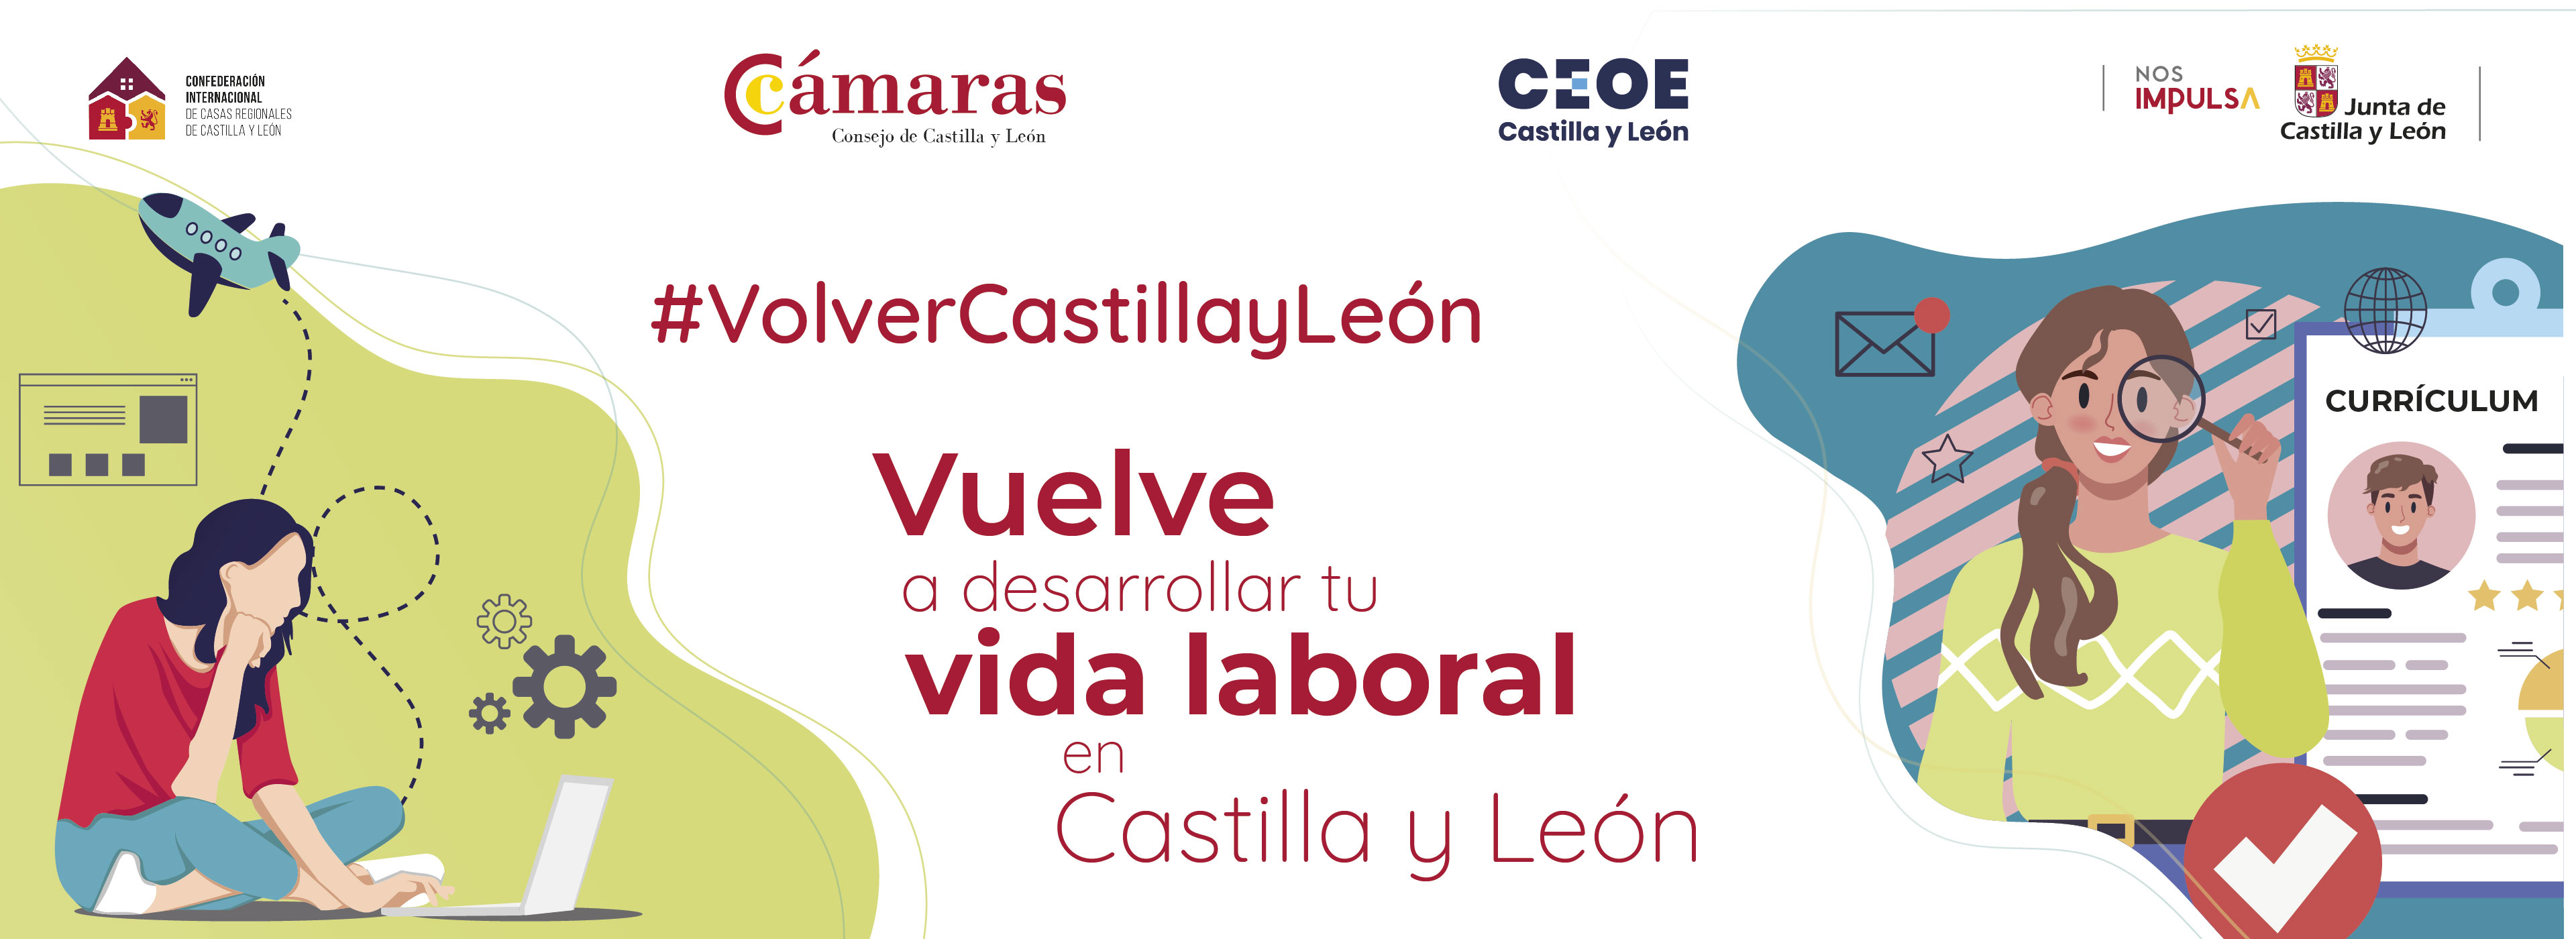 Vuelve a desarrollar tu vida laboral en Castilla y León